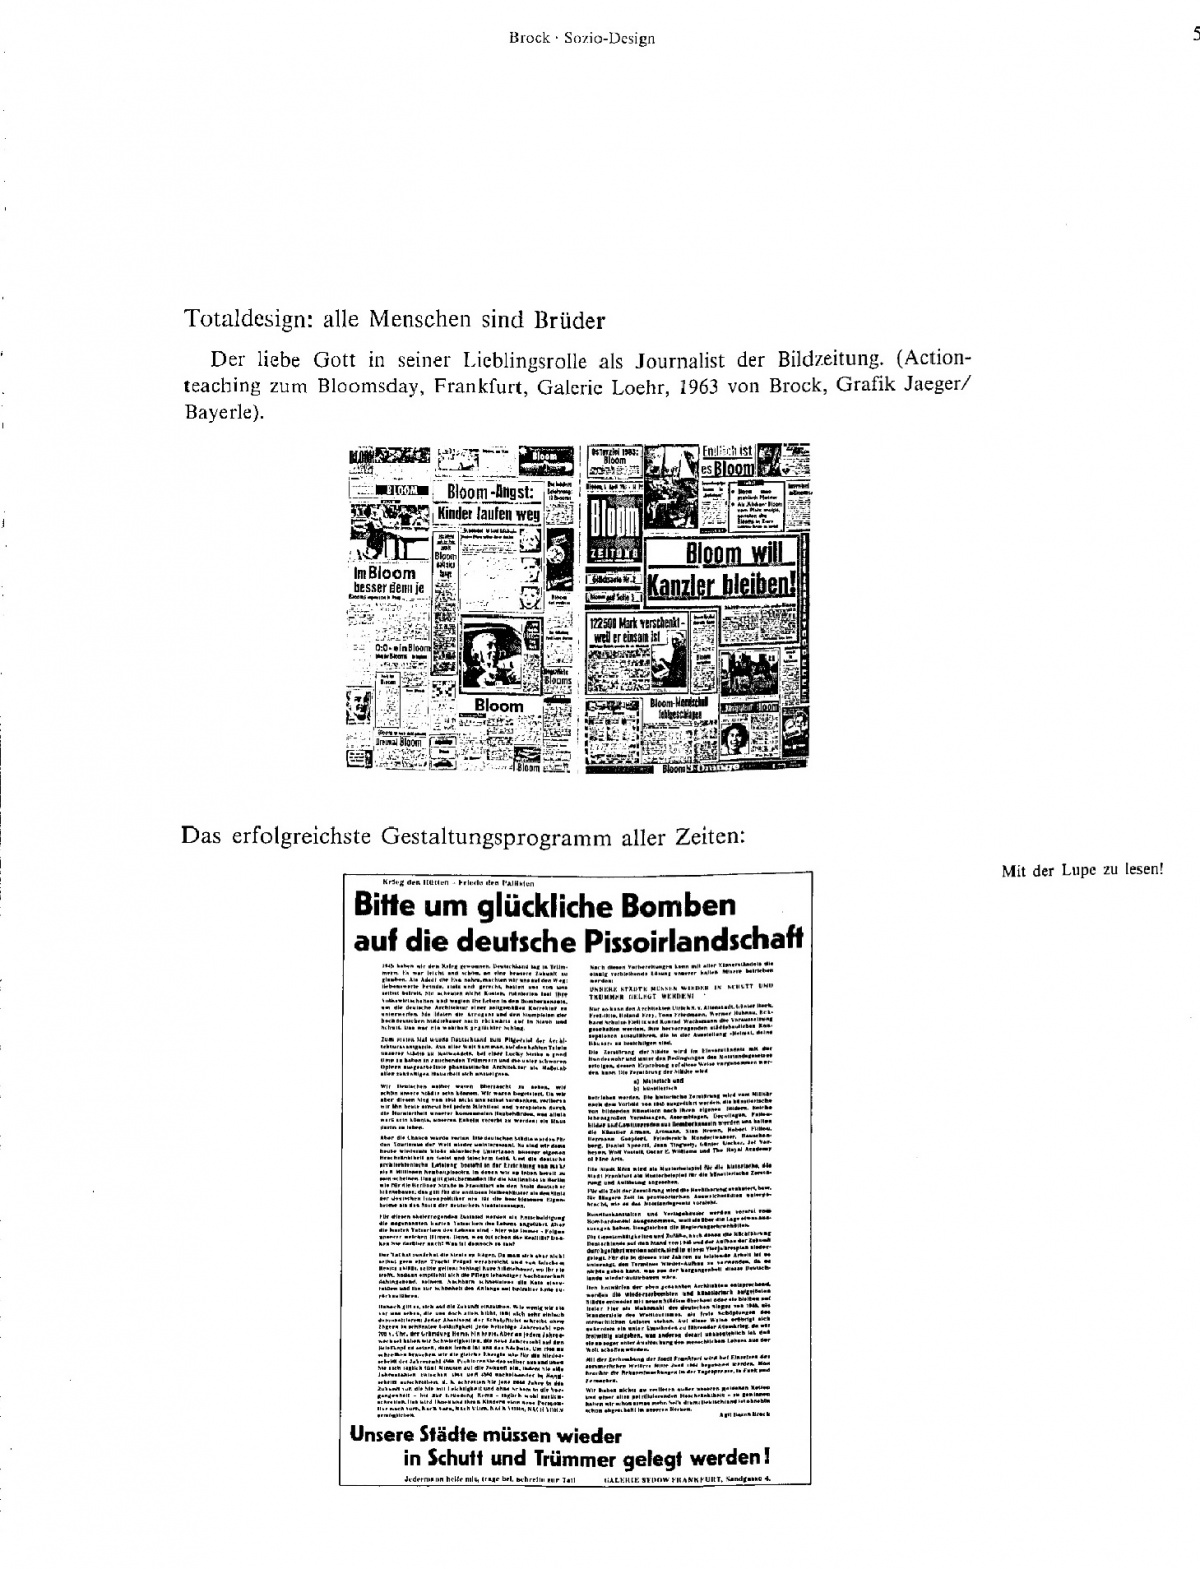 Sozio-Design (Bildessay). In: Design ist unsichtbar. Wien 1981, S. 57